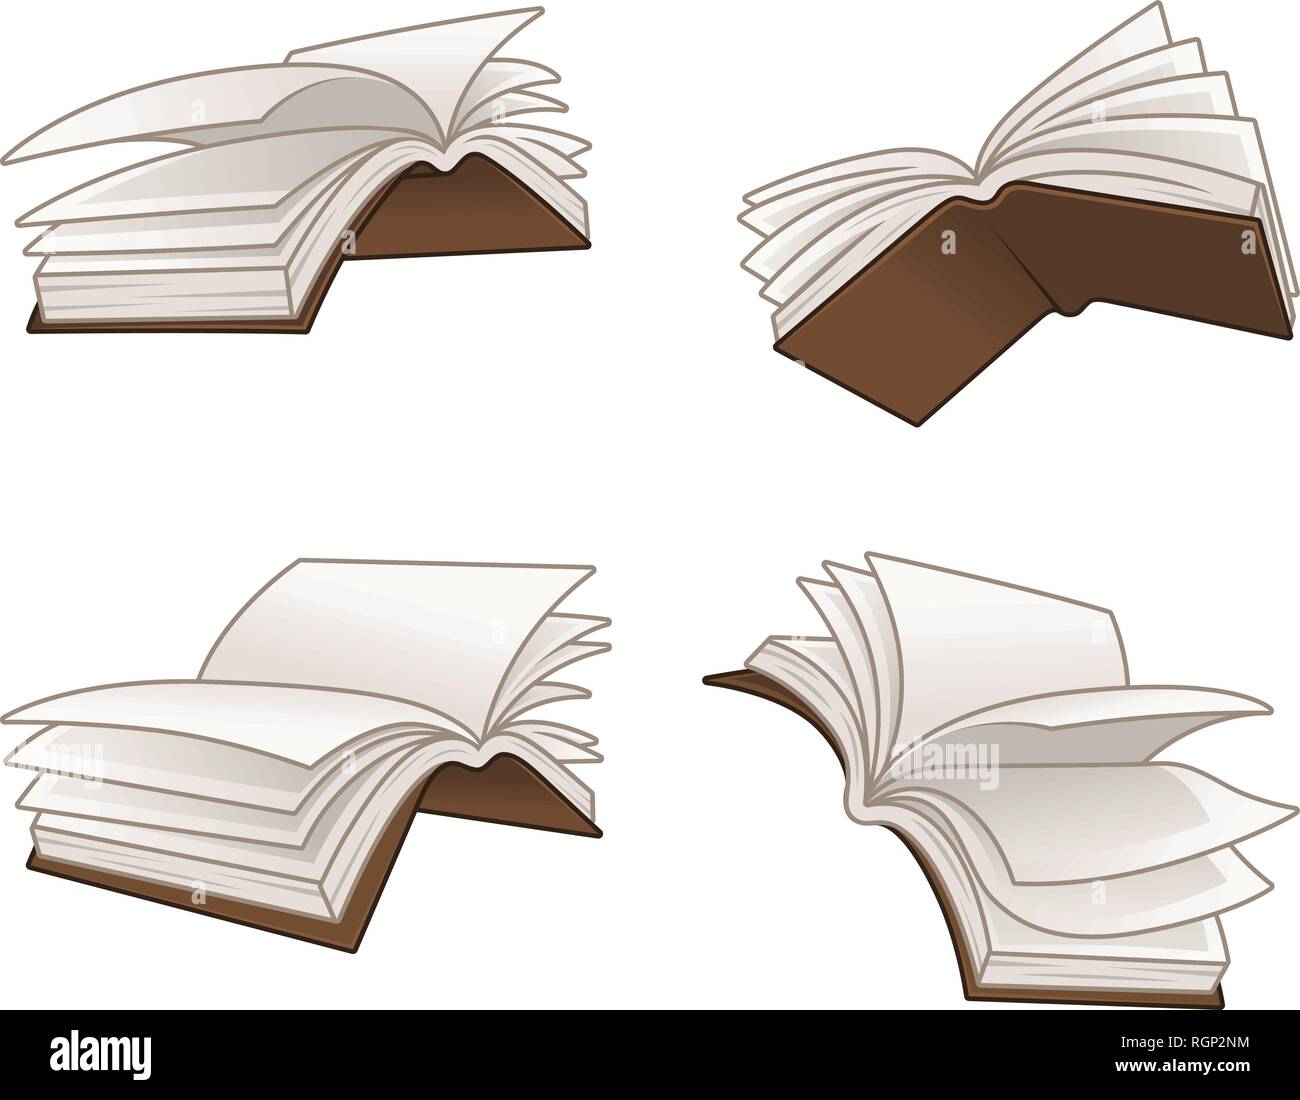 Fliegende Bücher Vector Illustration Design, auf weißem Hintergrund, vector  clip art Illustration Stock-Vektorgrafik - Alamy